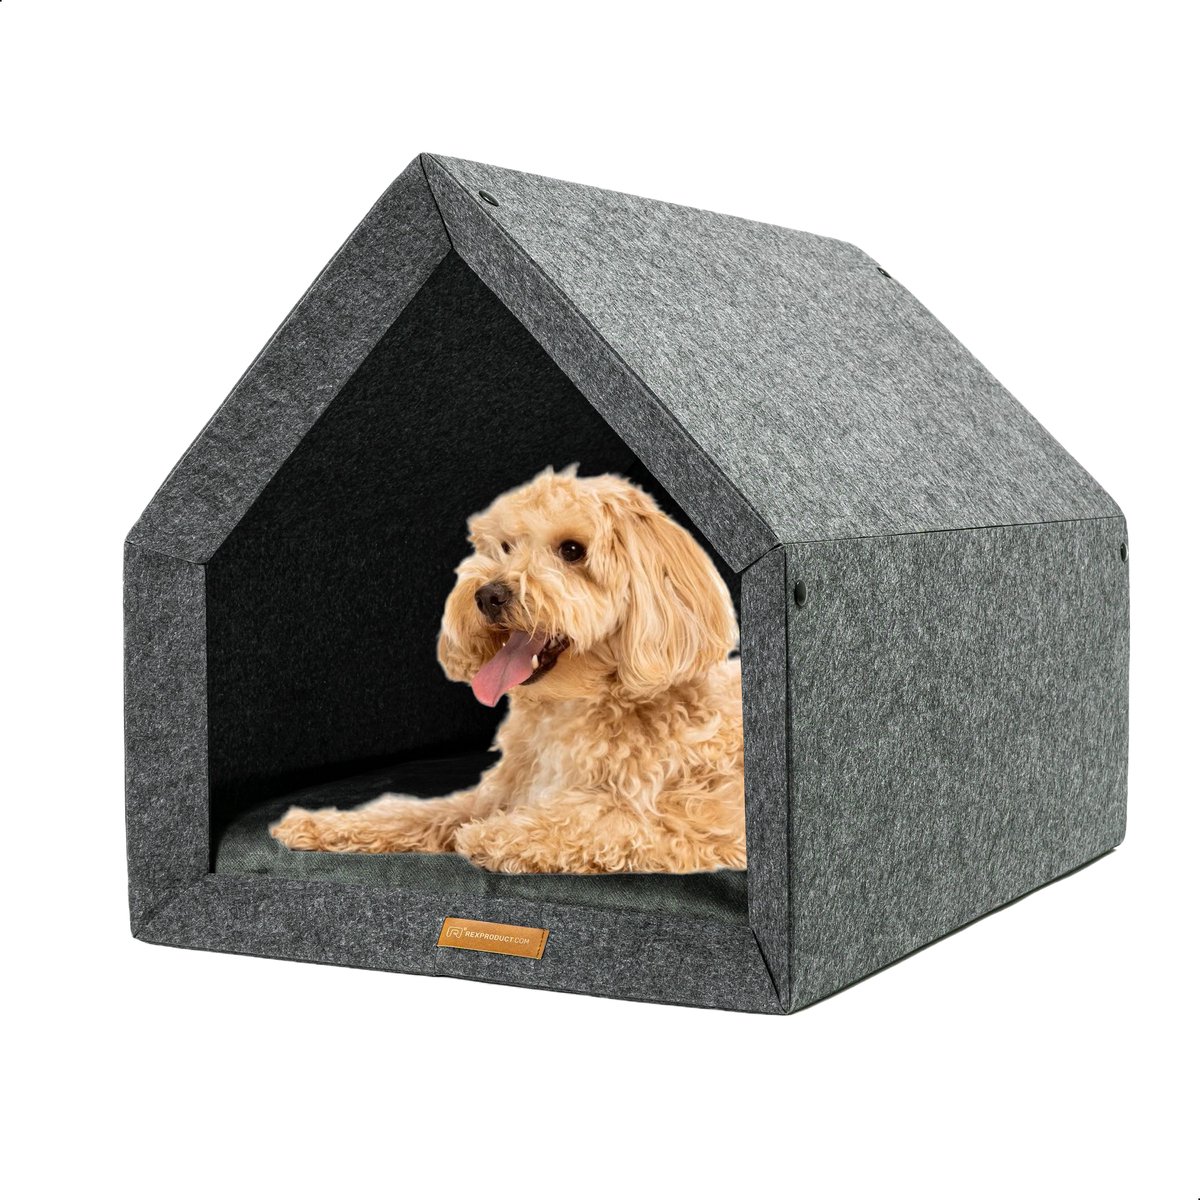 Rexproduct Hondenhuis – Hondenhuisjes voor binnen - Hondenkussen inbegrepen – Hondenhuizen voor in huis – Hondenhok - Hondenmand gemaakt van Gerecycled PETflessen - PETHome - Donkergrijs Kaki